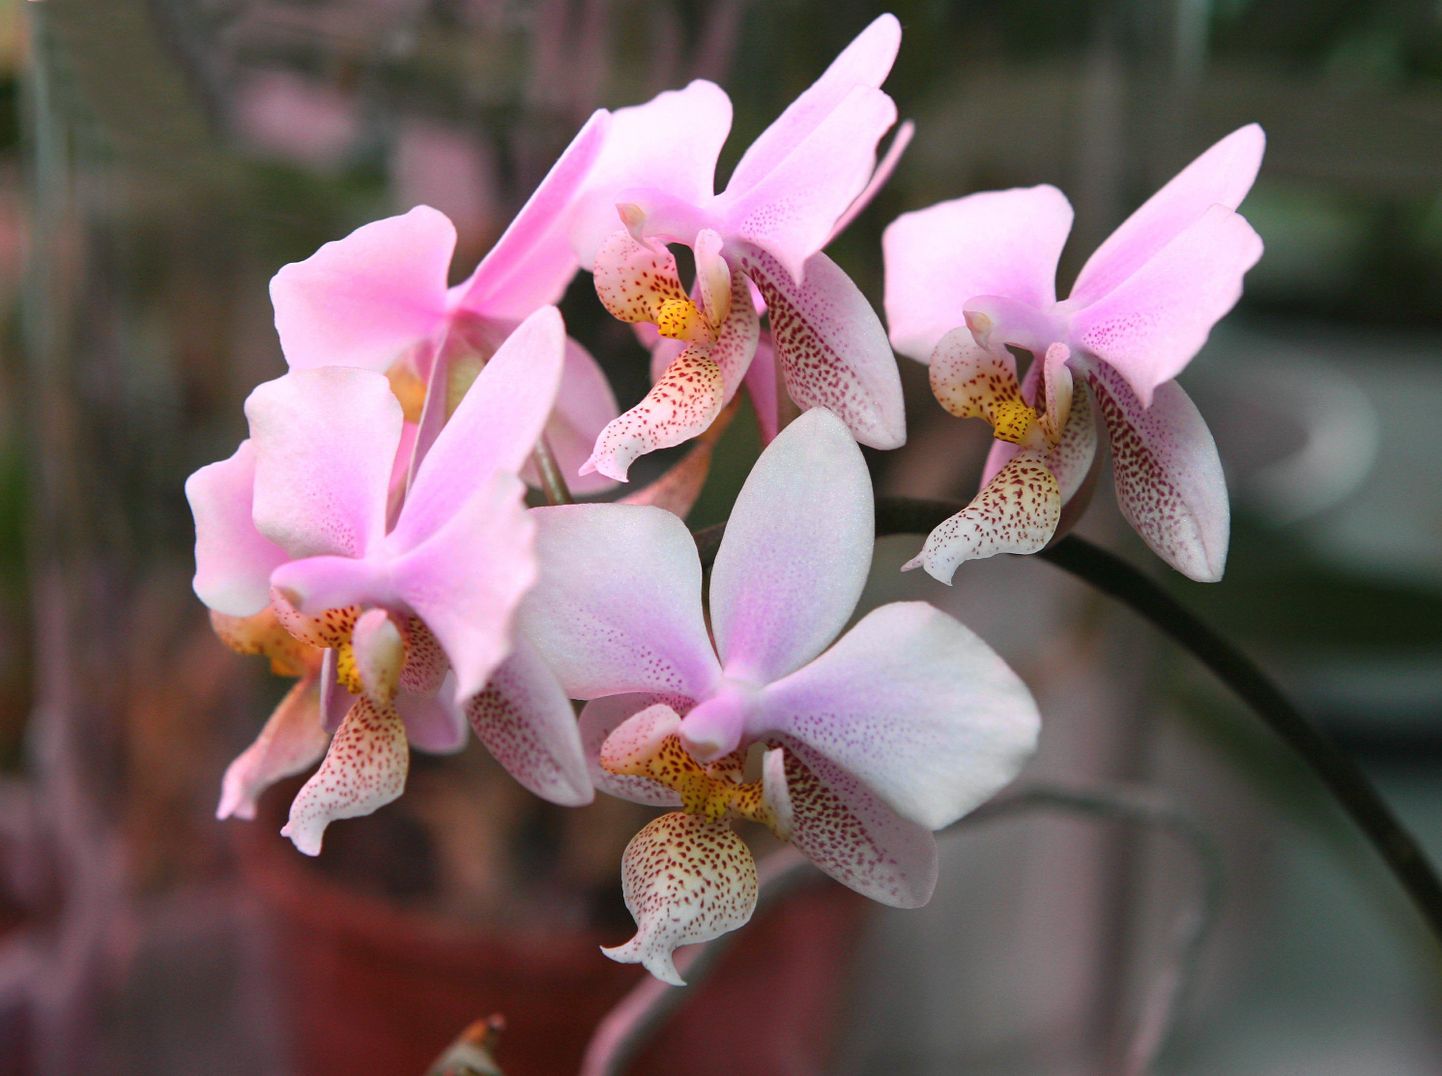 Orhideevõistlusel võistlevad kollektsionääride iludused. Need õied kaunistasid 2011. aastal Kalju Komissarovi kogu.